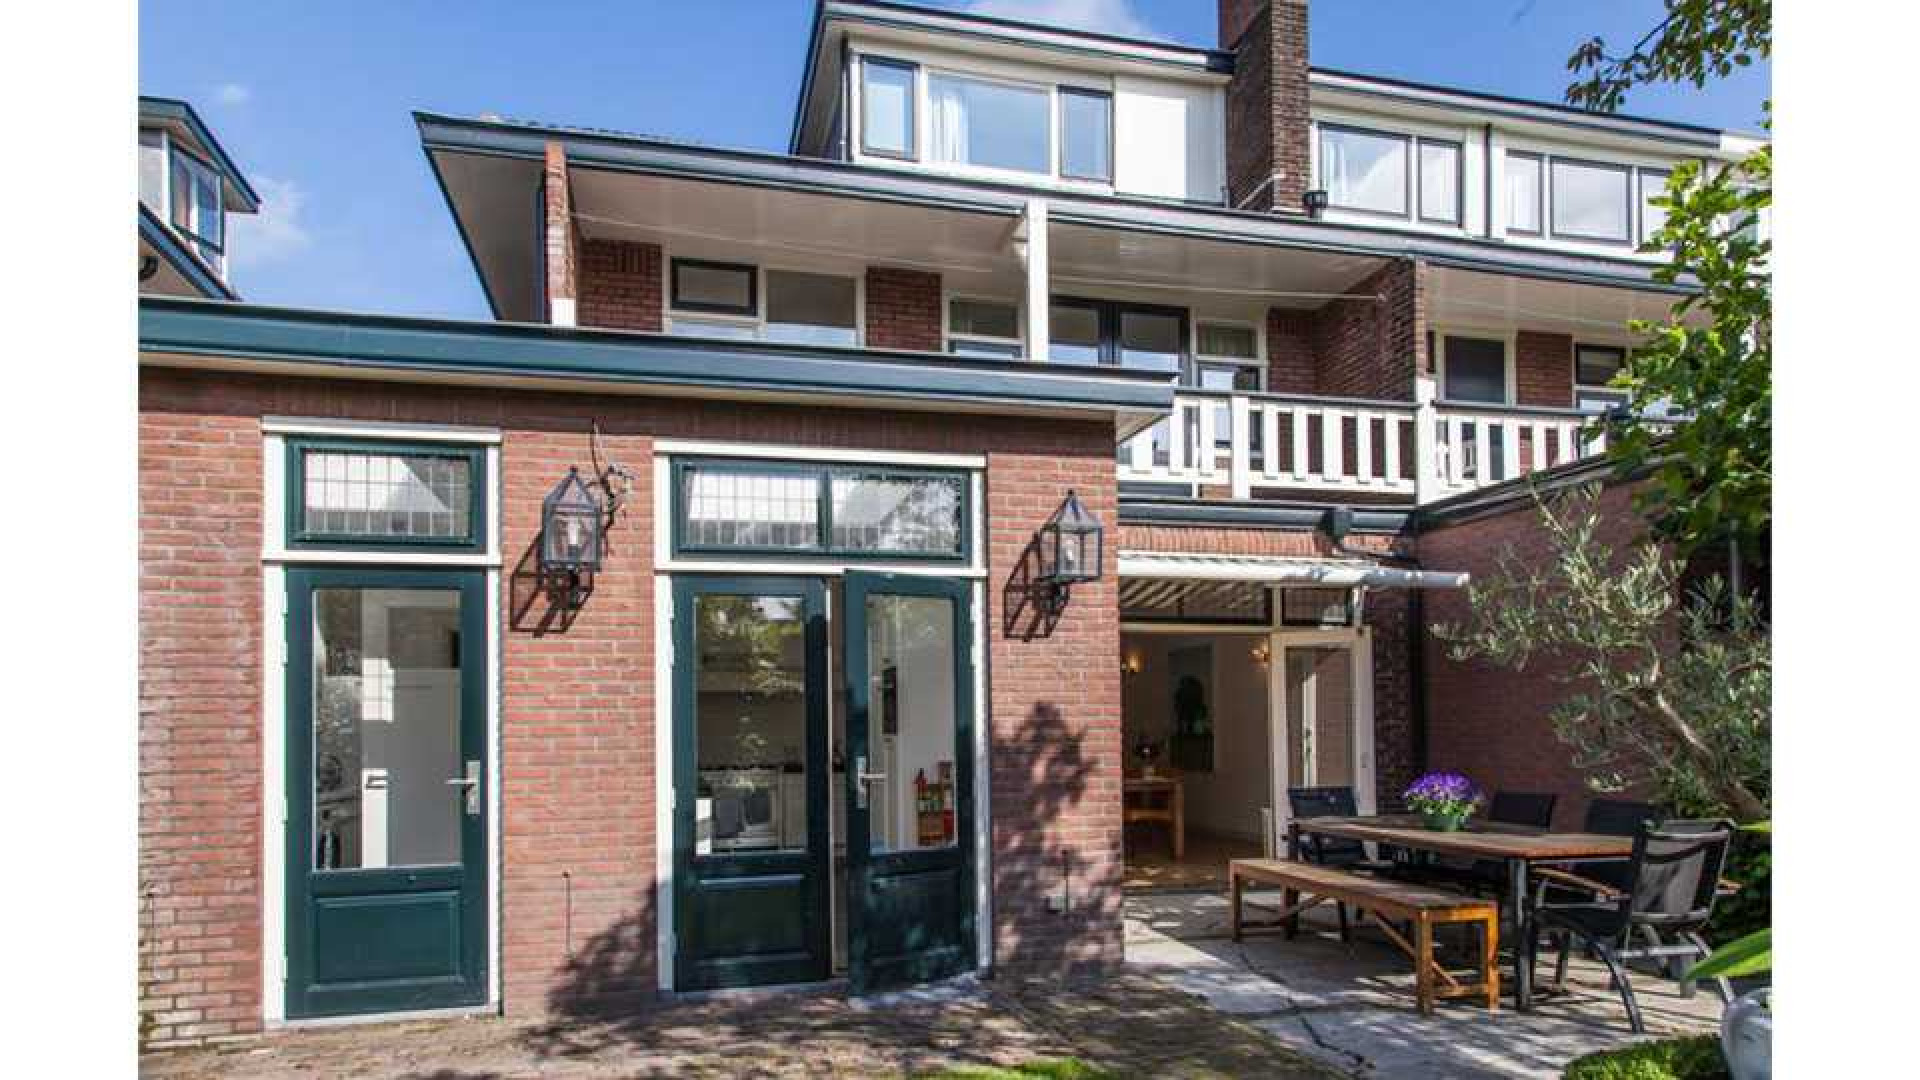 Alberto Stegeman koopt uit eigen zak voor bijna 1 miljoen villa in Heemstede. Zie foto's 11